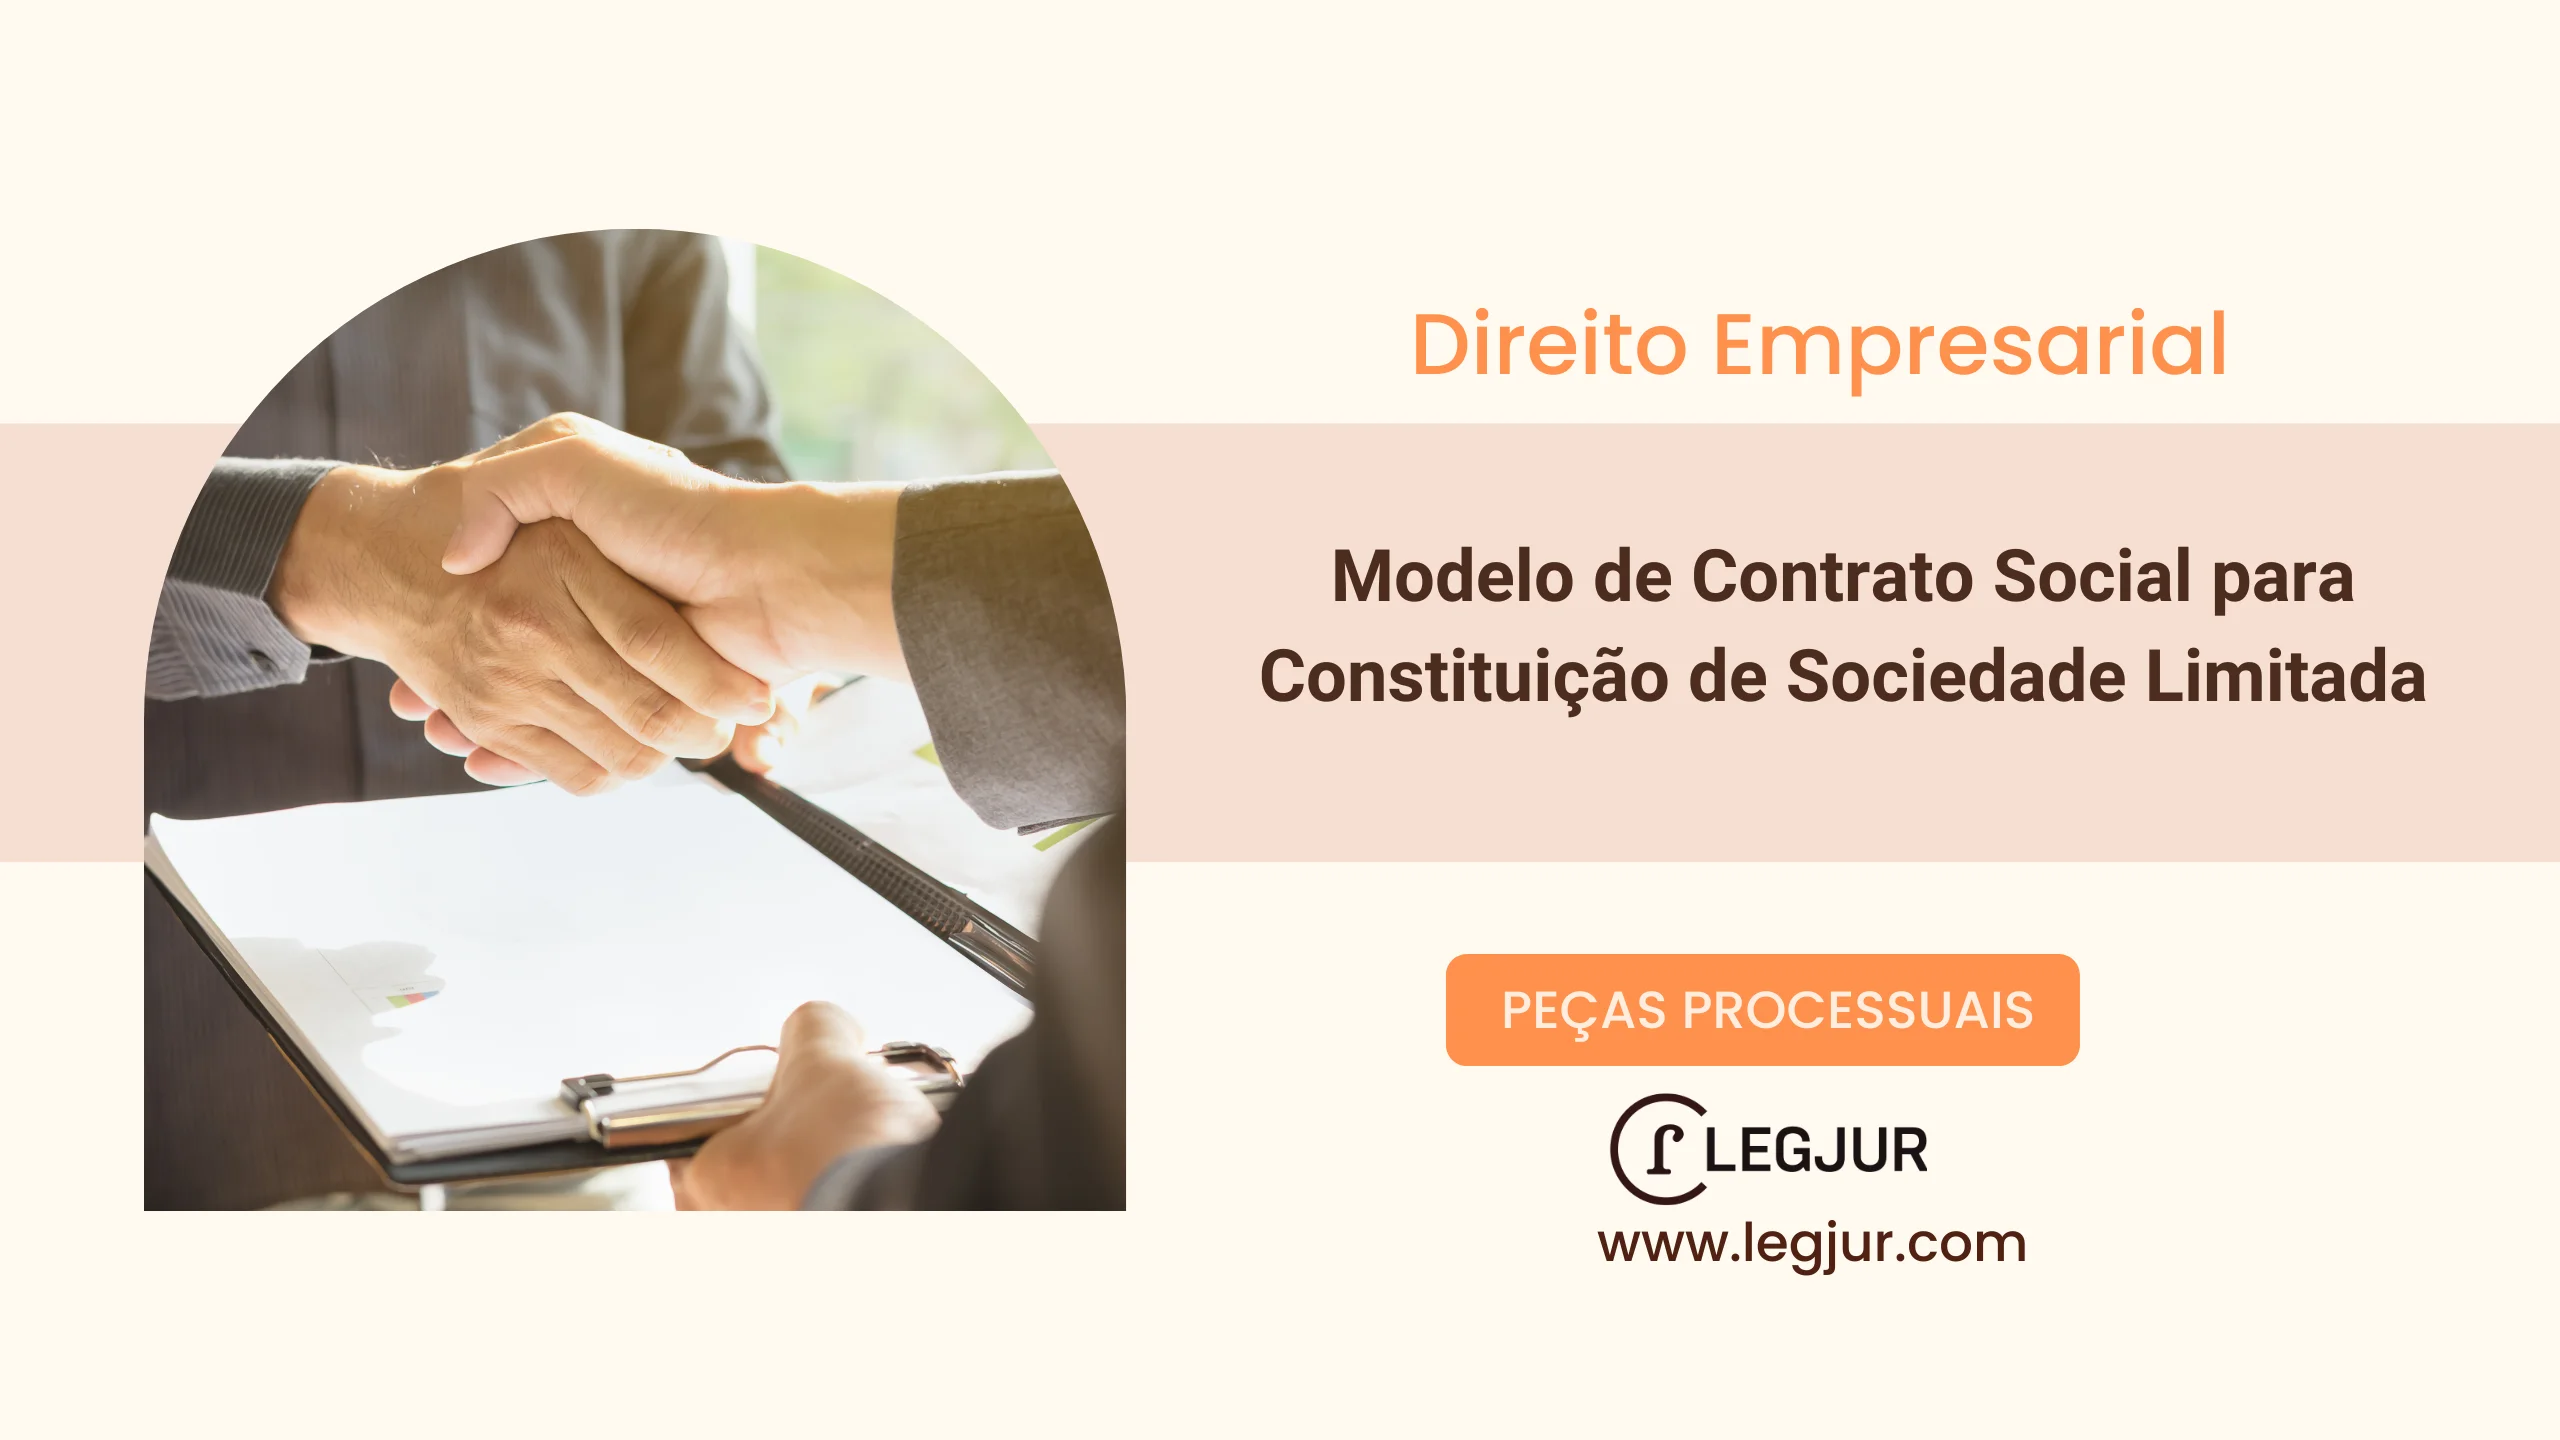 Modelo de Contrato Social para Constituição de Sociedade Limitada